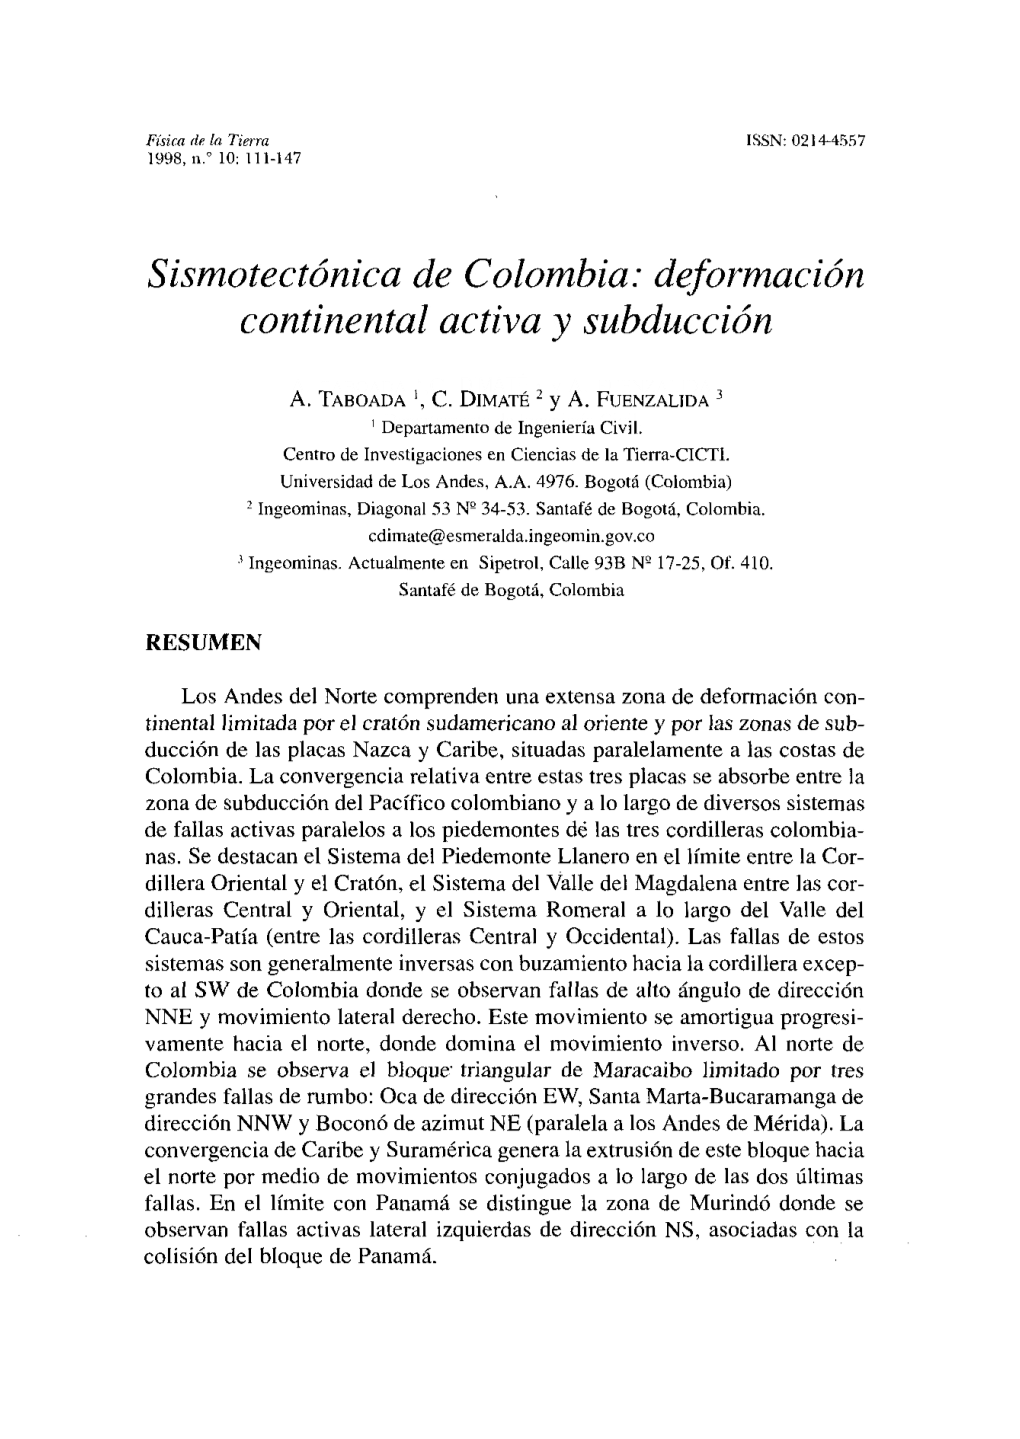 Sismotectónica De Colombia: Deformación Continental Activa Y Subducción